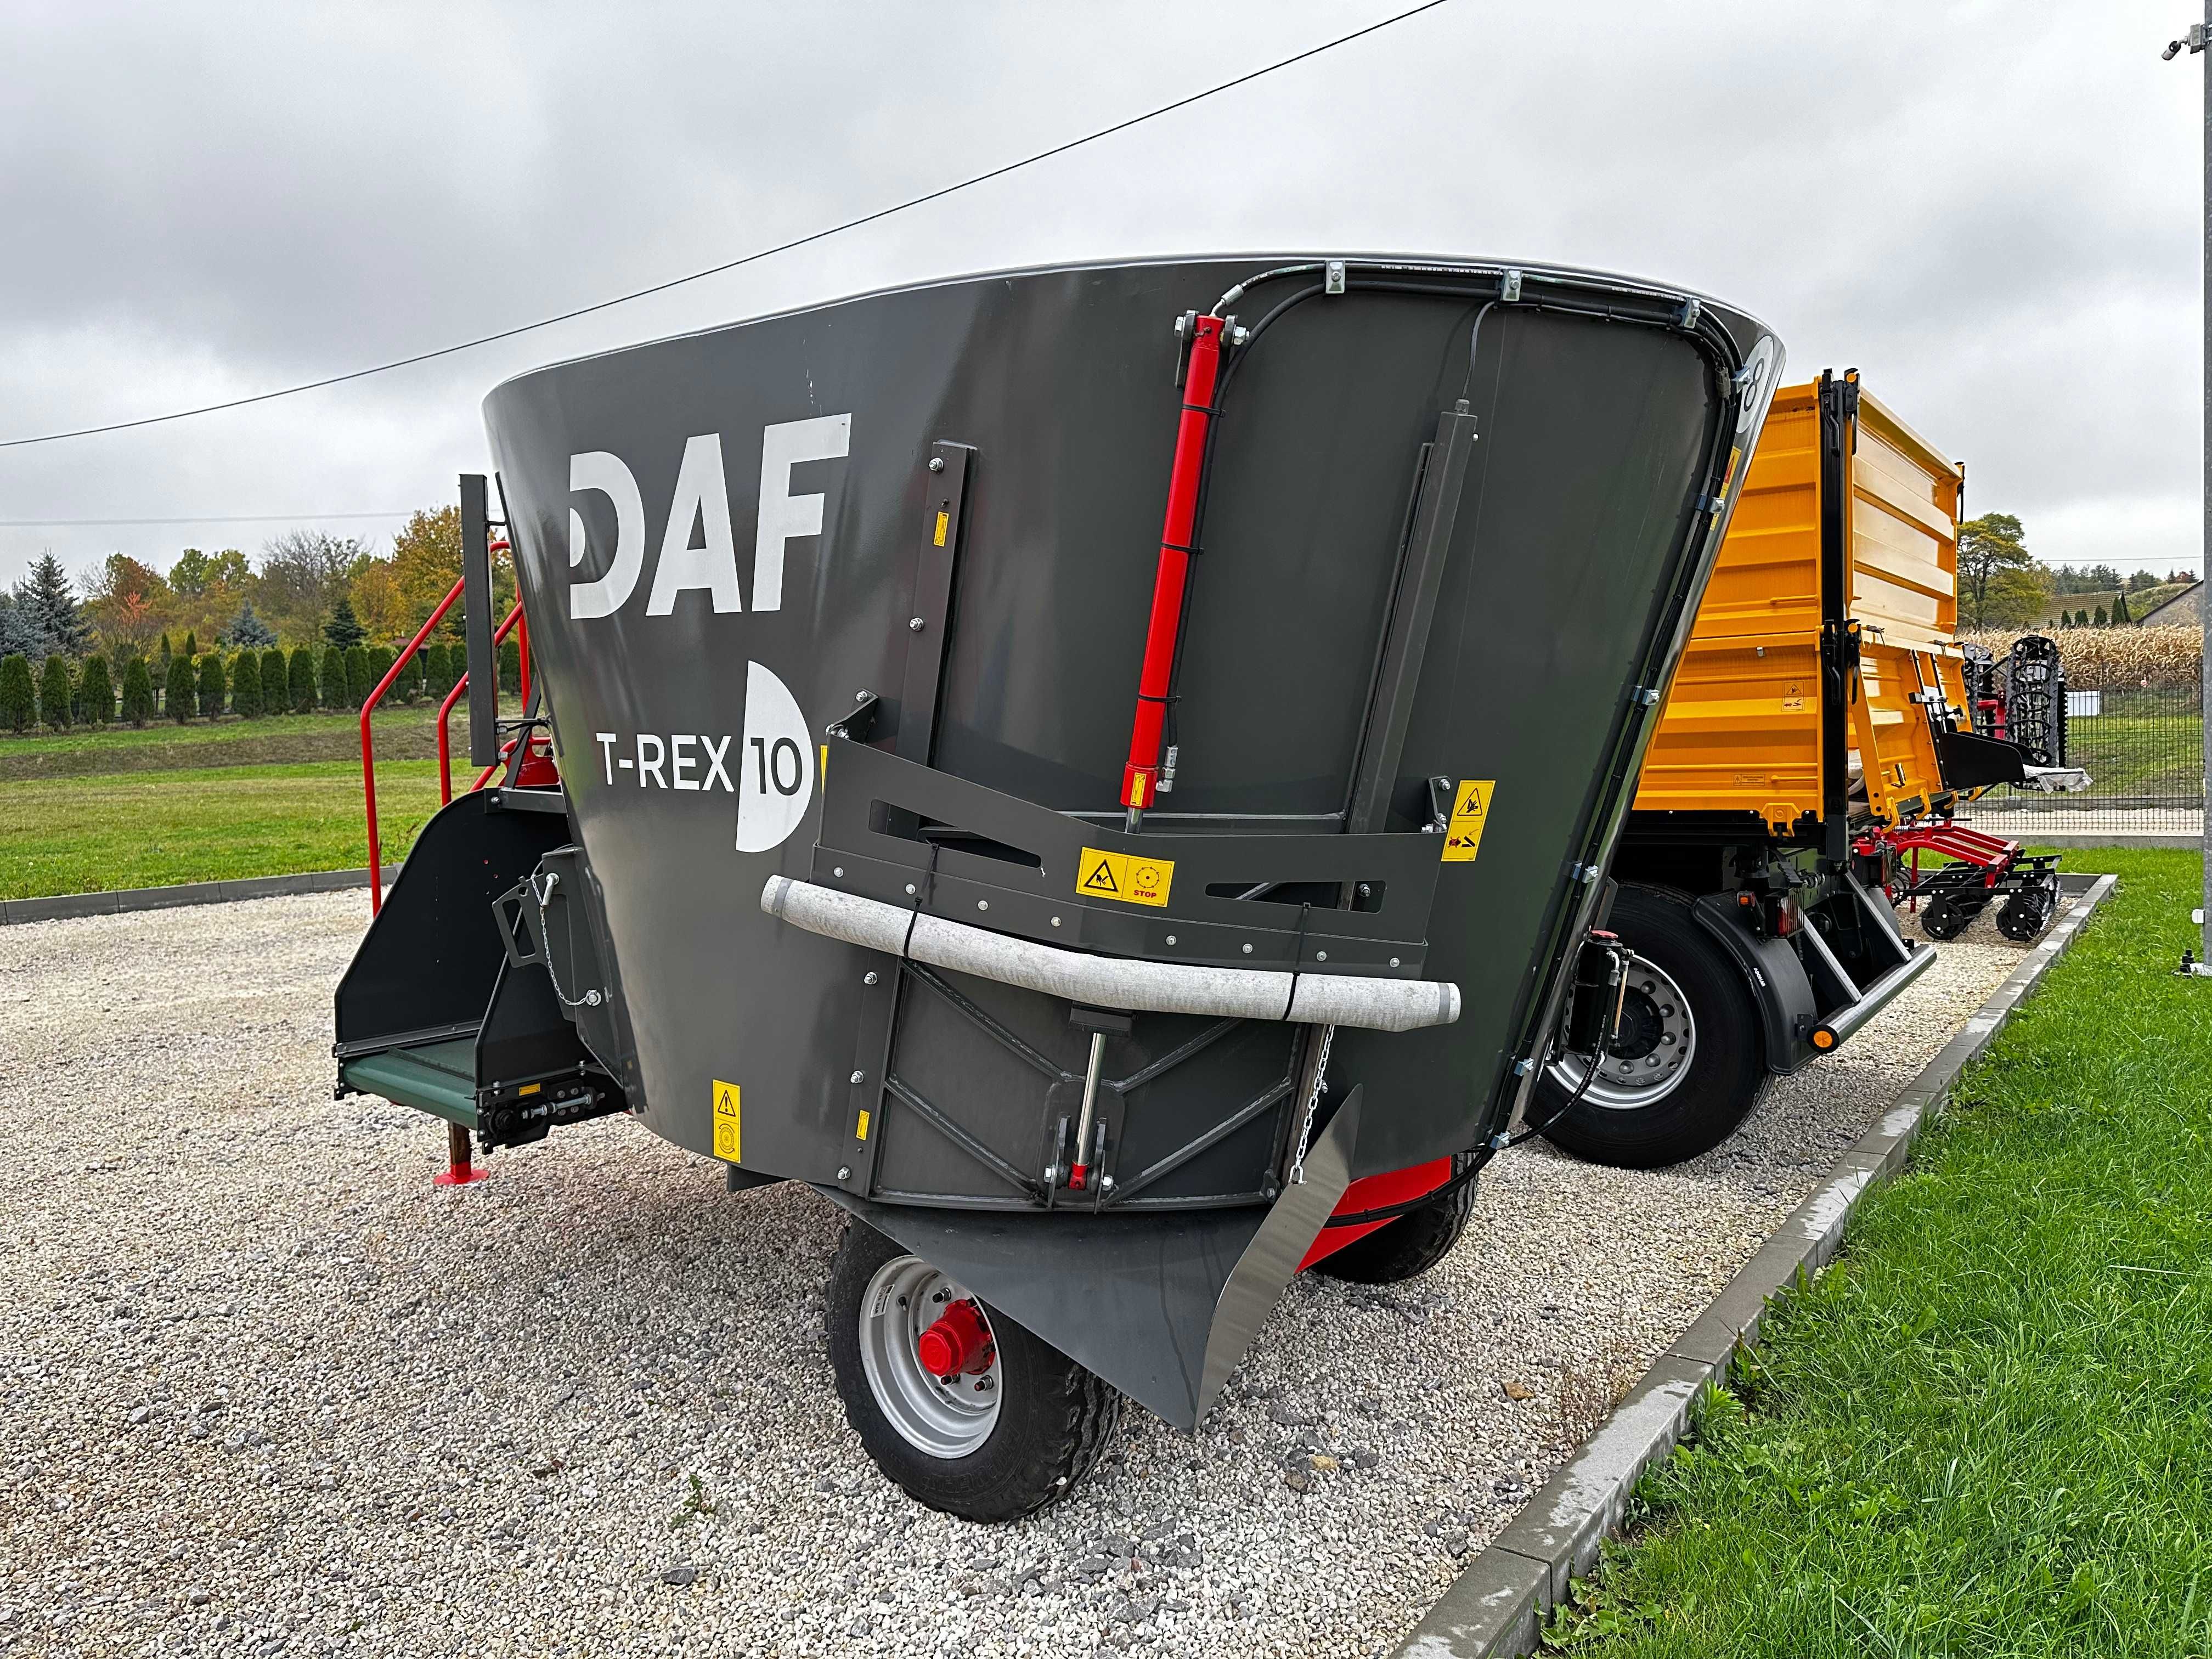 Wóz paszowy DAF AGRO T-REX 10 - NOWY - OD Ręki